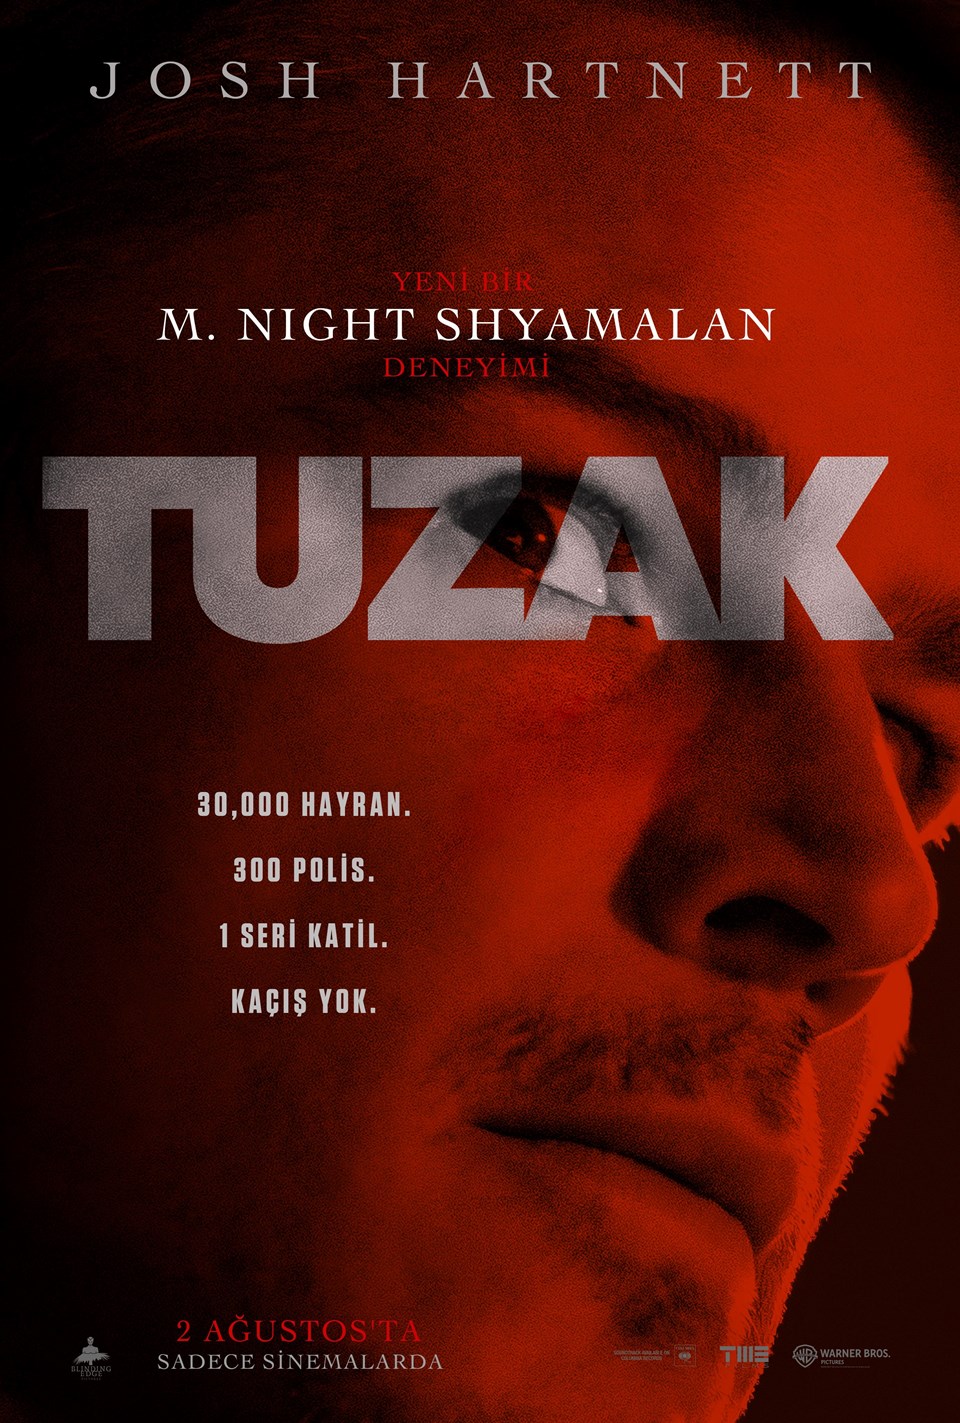 Yeni bir M. Night Shyamalan filmi: Tuzak - 1